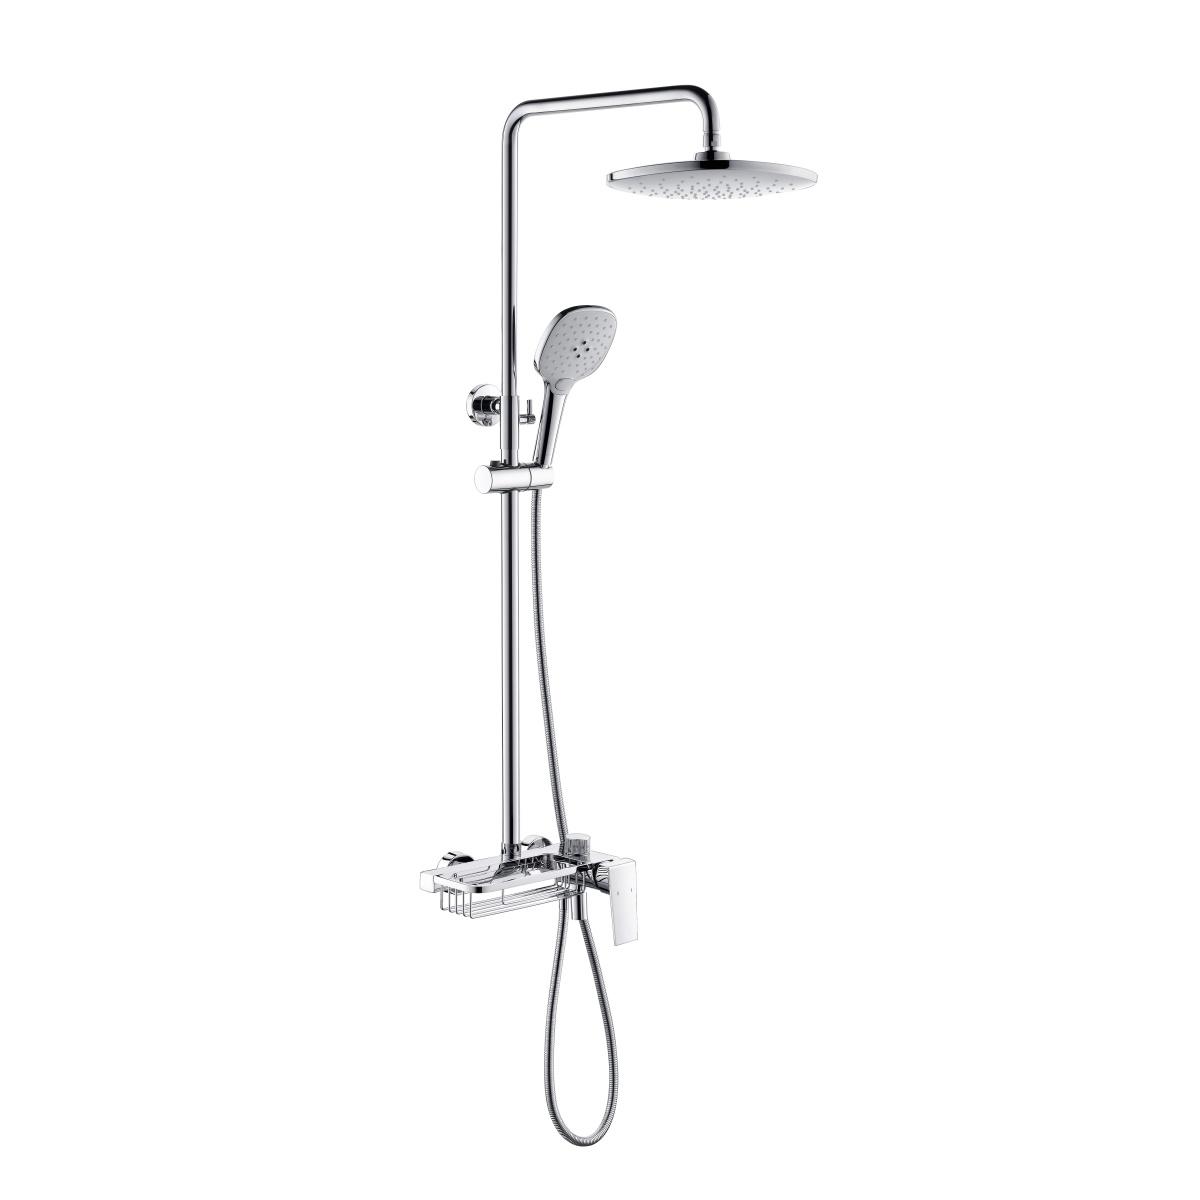 Cột sen tắm đa năng YS34249, cột tắm mưa có vòi, vòi và giỏ, có thể điều chỉnh độ cao;